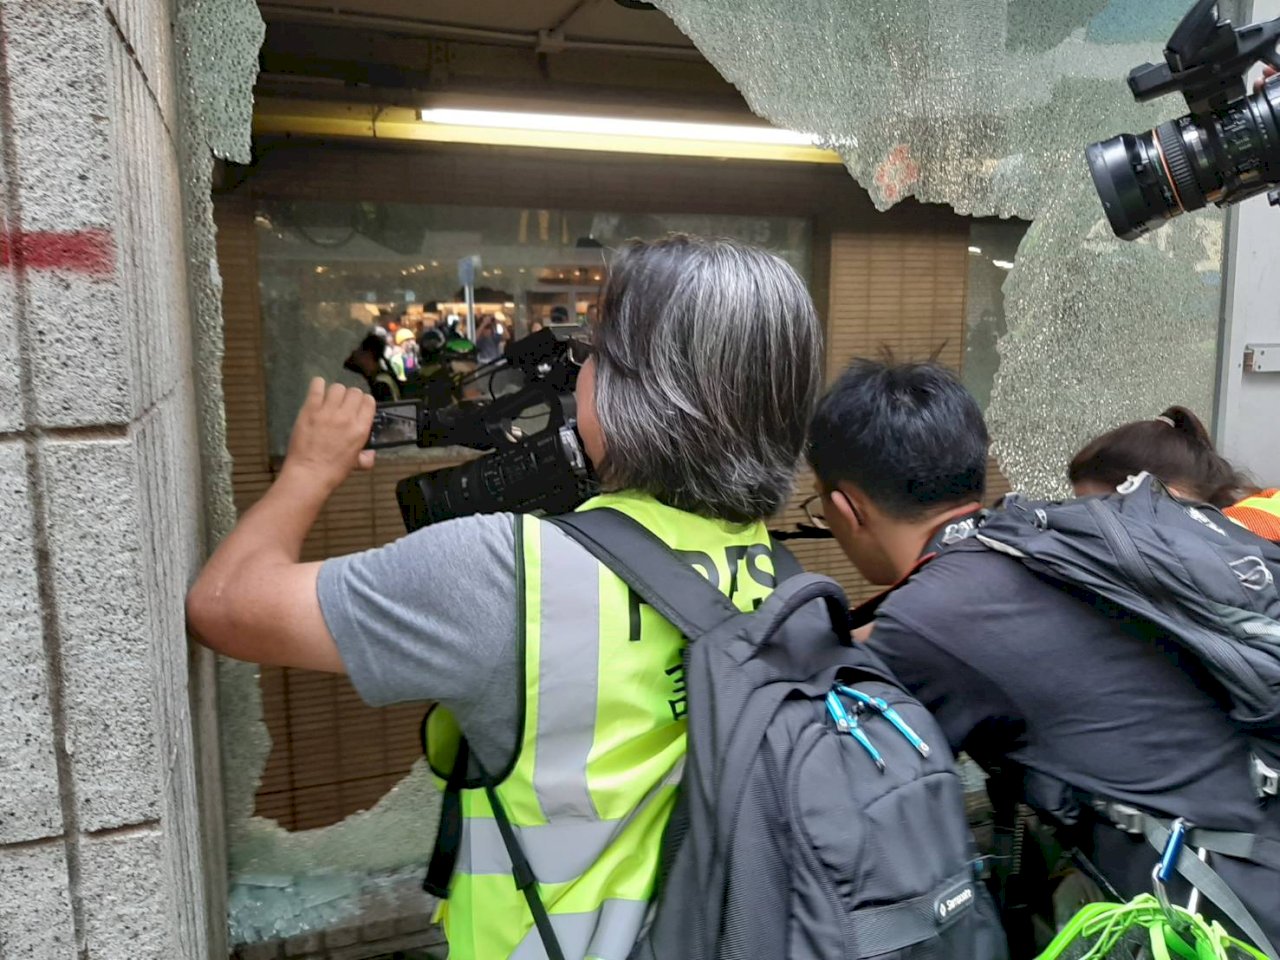 新聞自由備受考驗 香港記者吐心聲